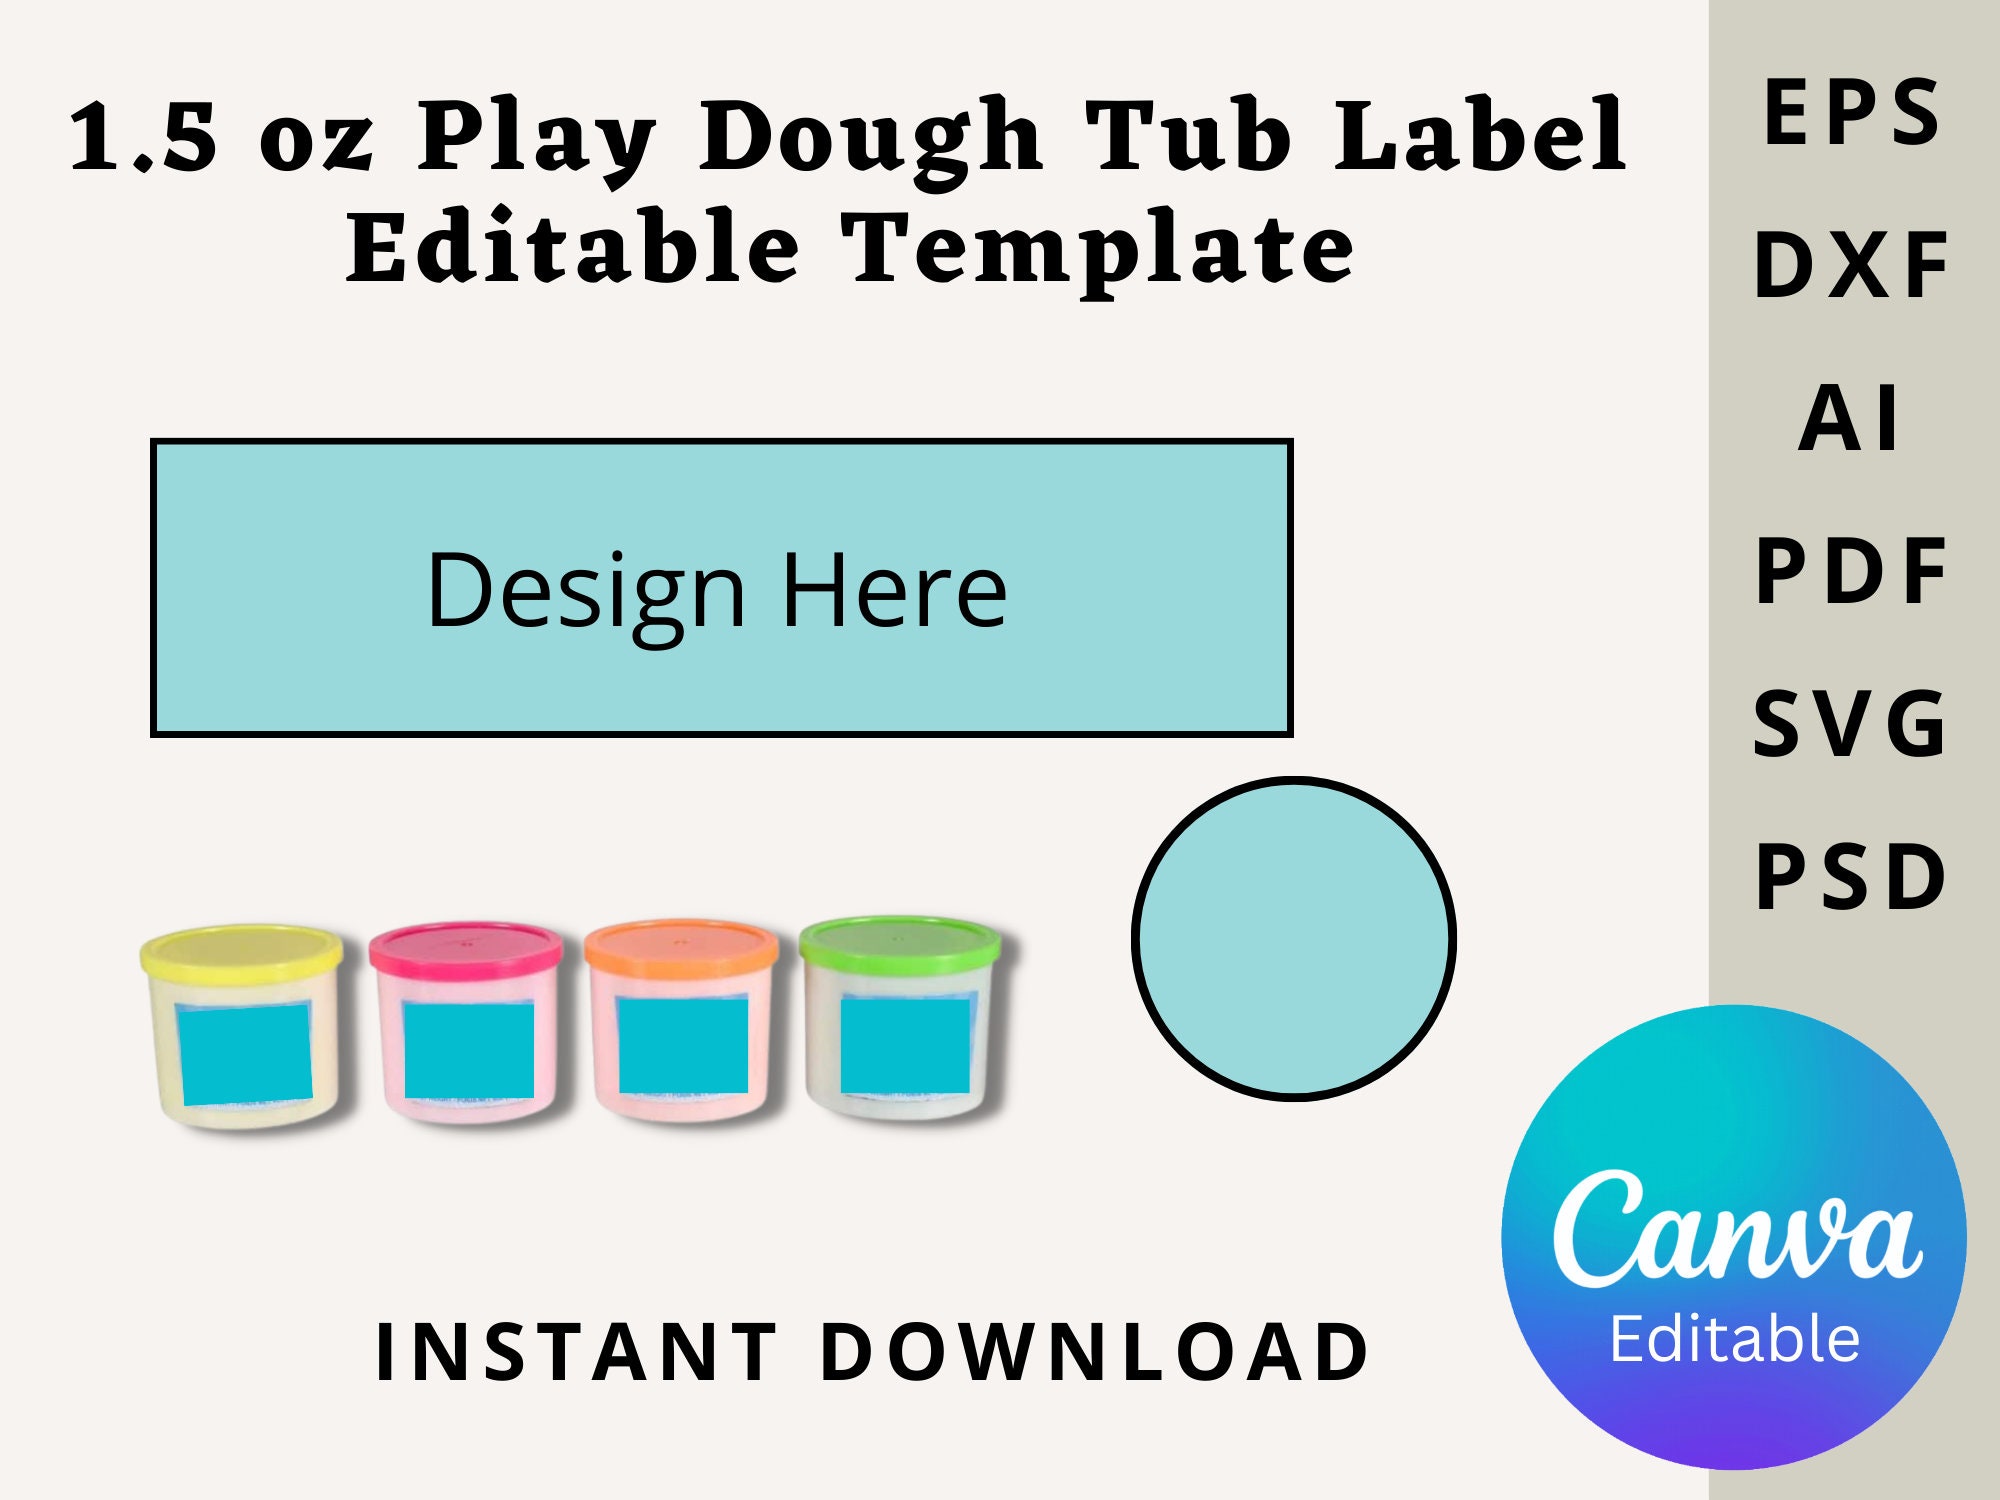 Play Doh Dough Can 4oz White 112gr PlayDoh Single Tub Original Compound